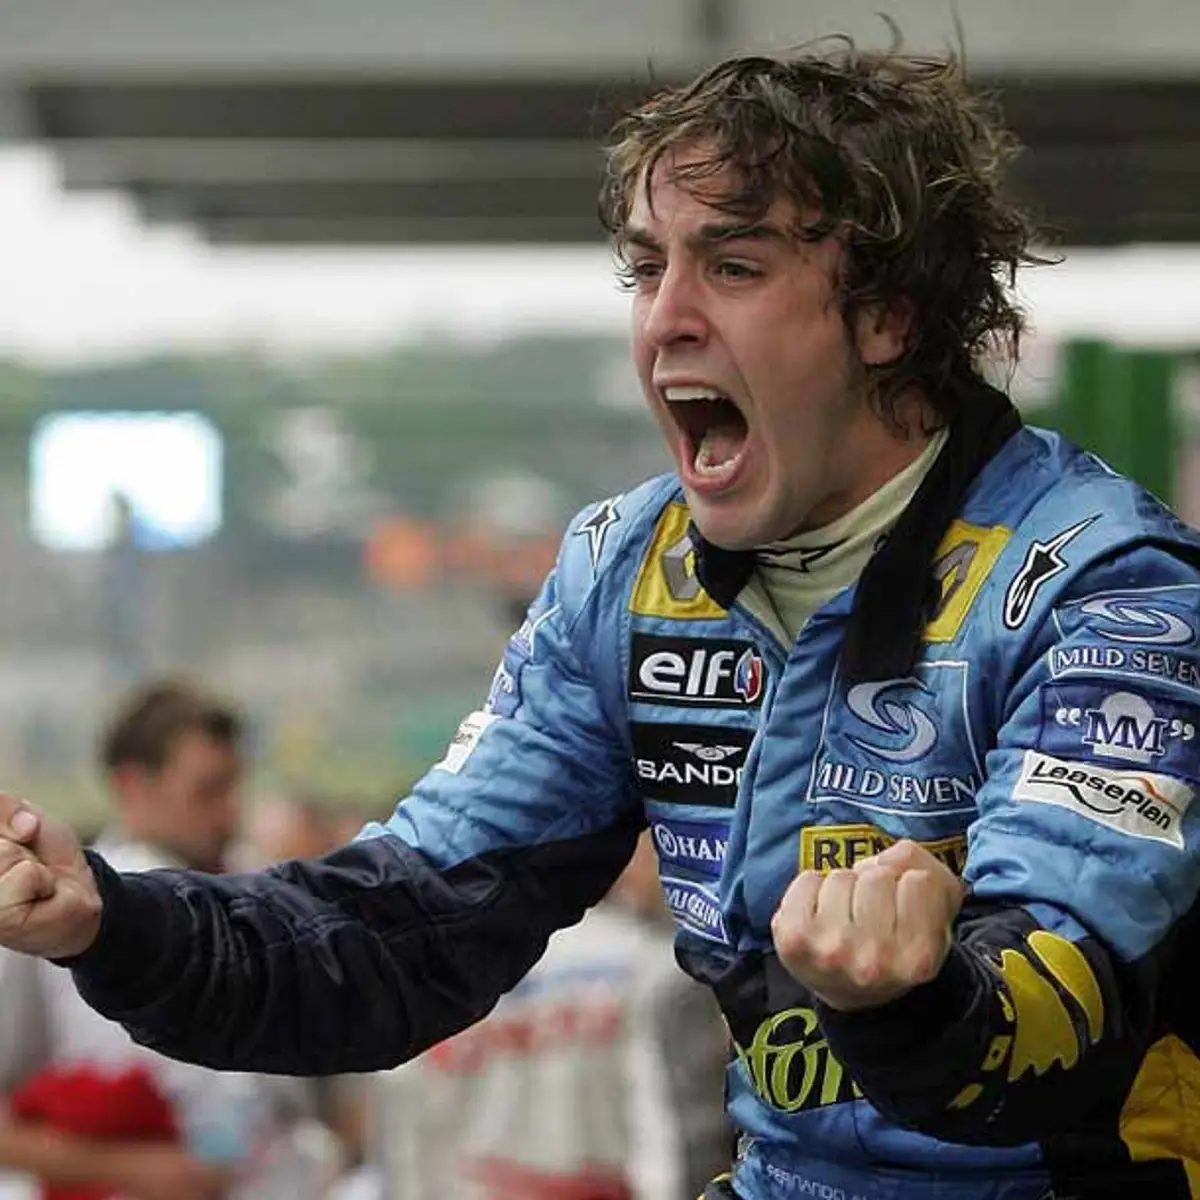 Podría ganar Fernando Alonso el mundial de F1 con el coche del 2005? –  Olivia